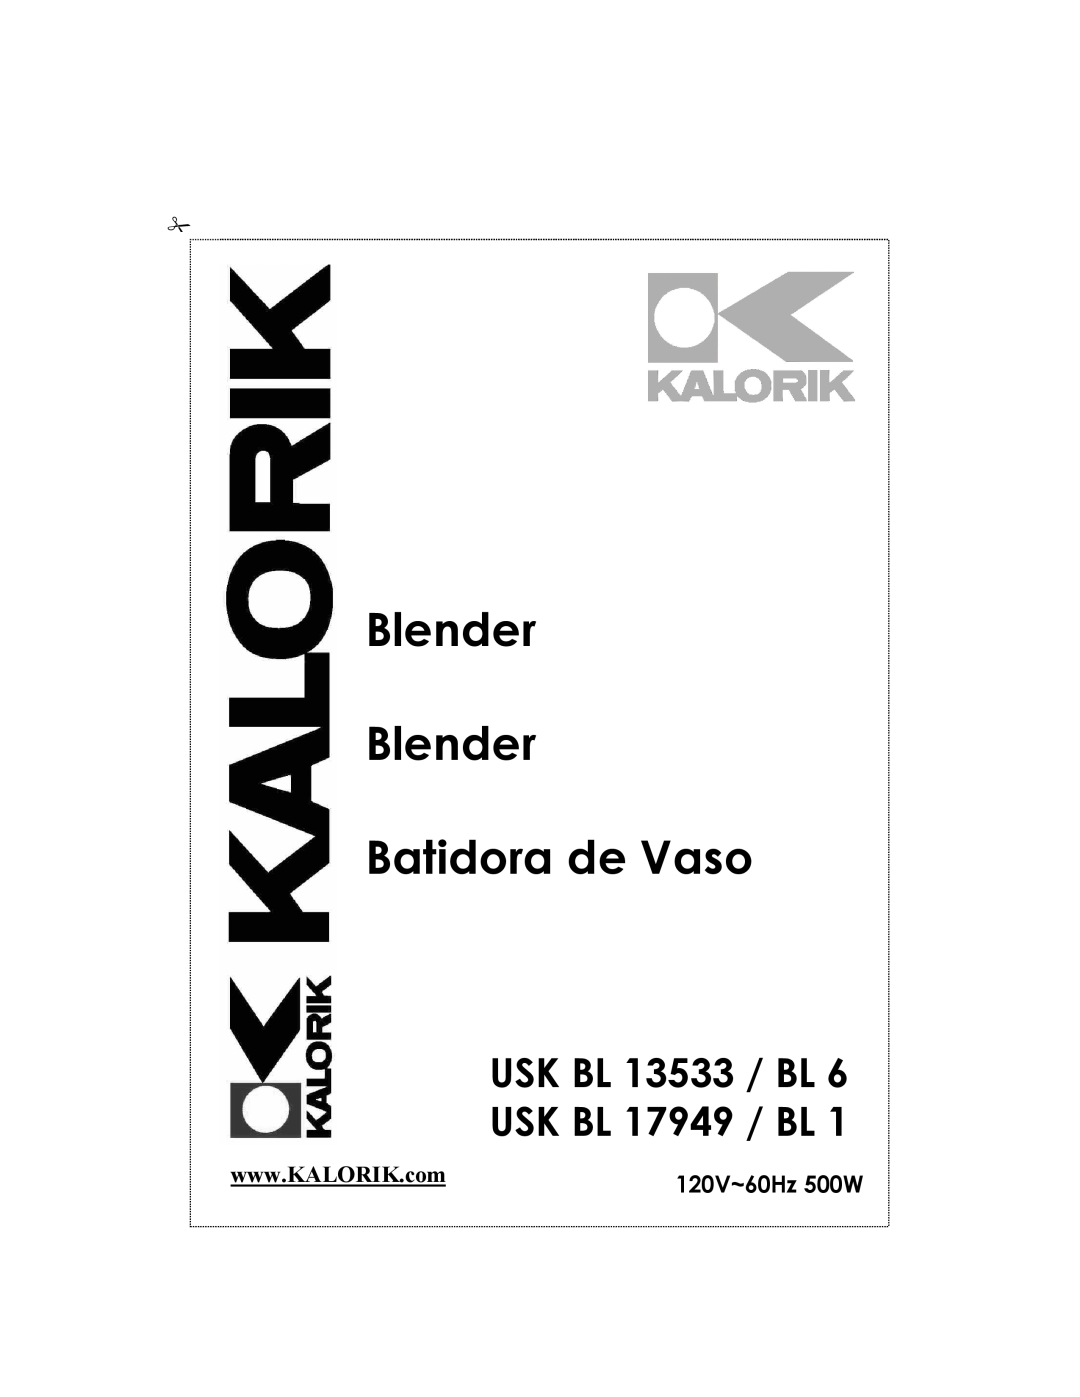 Kalorik USK BL 13533 BL 6 manual USK BL 13533 / BL USK BL 17949 / BL, Blender Blender Batidora de Vaso, 120V~60Hz 500W 